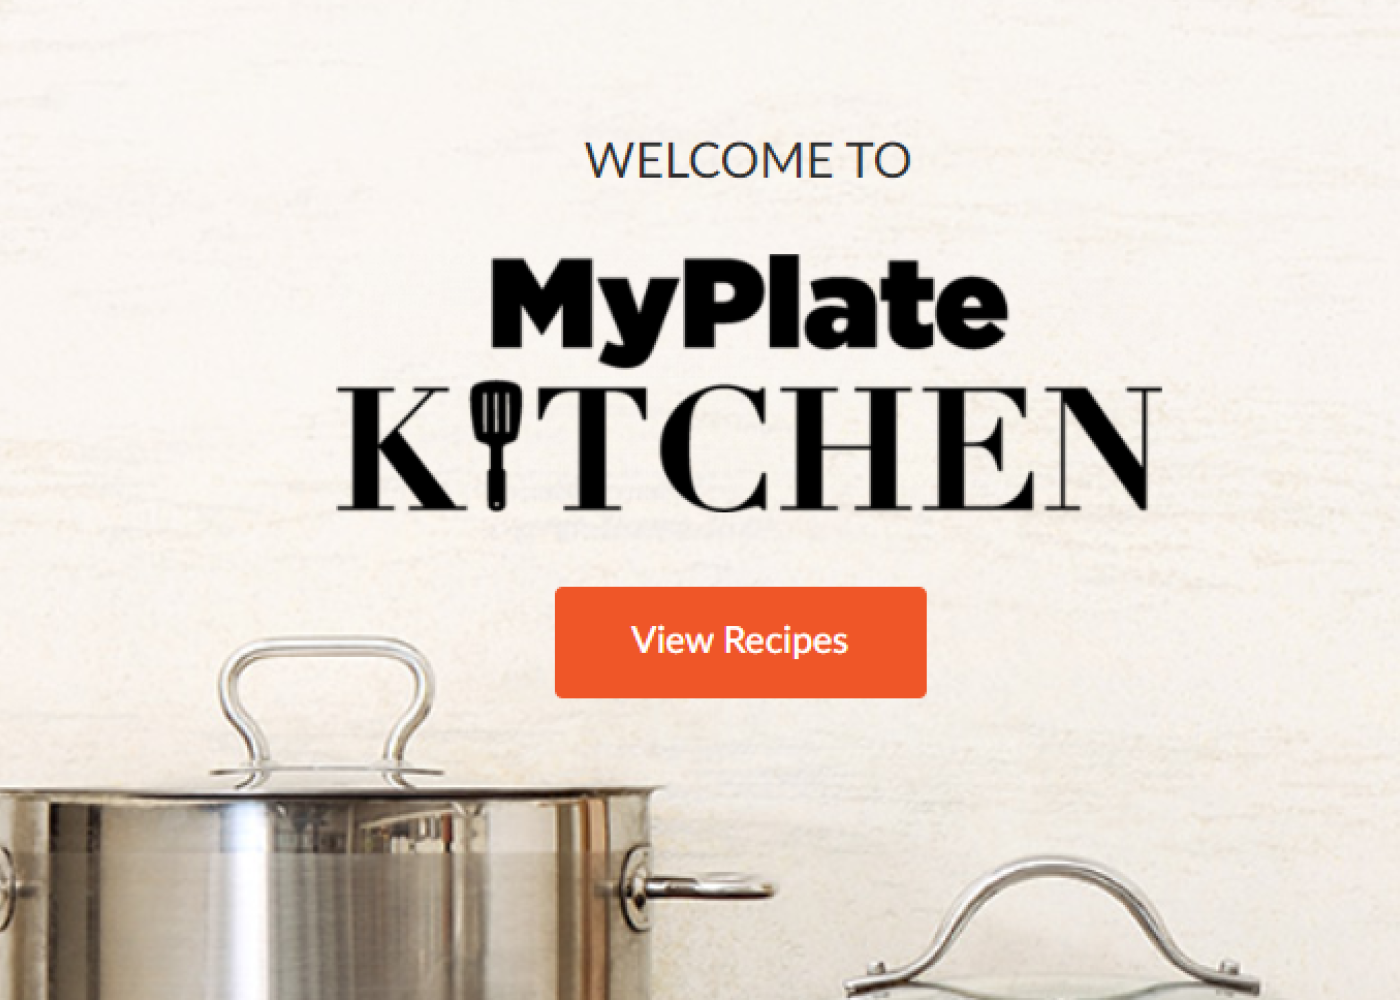 myplate kitchen